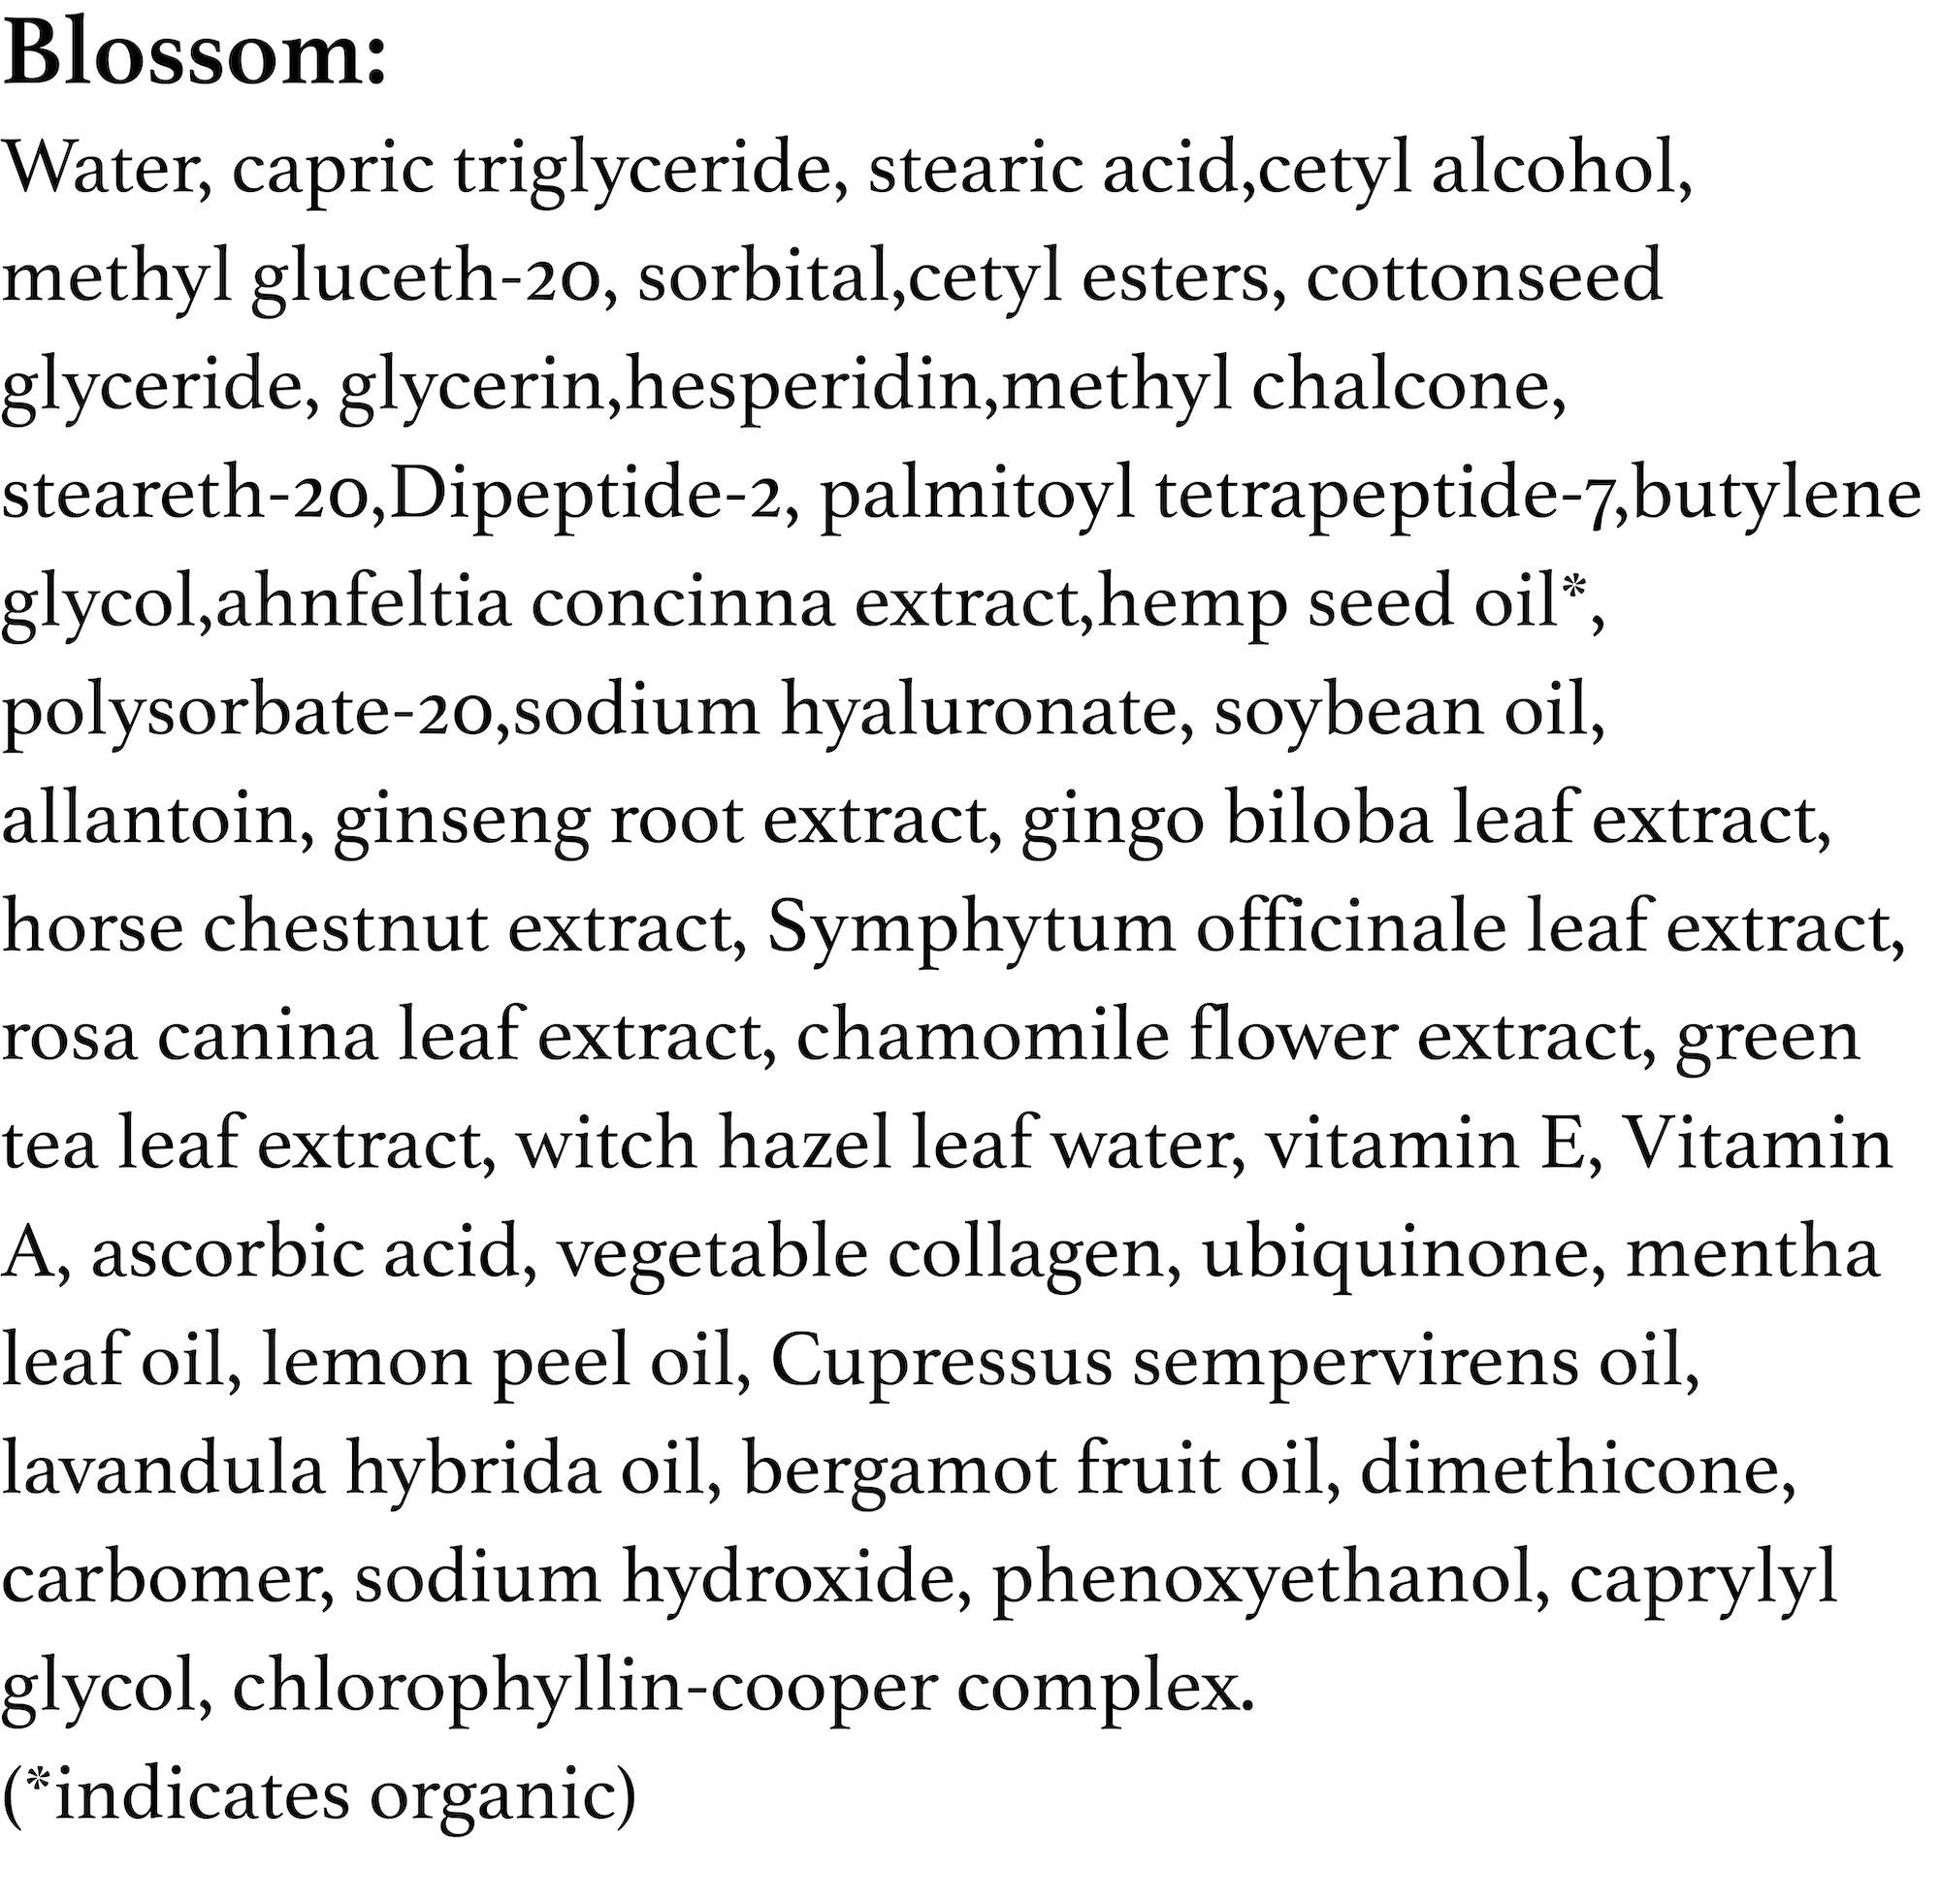 Blossom Facial Cream - 2 oz